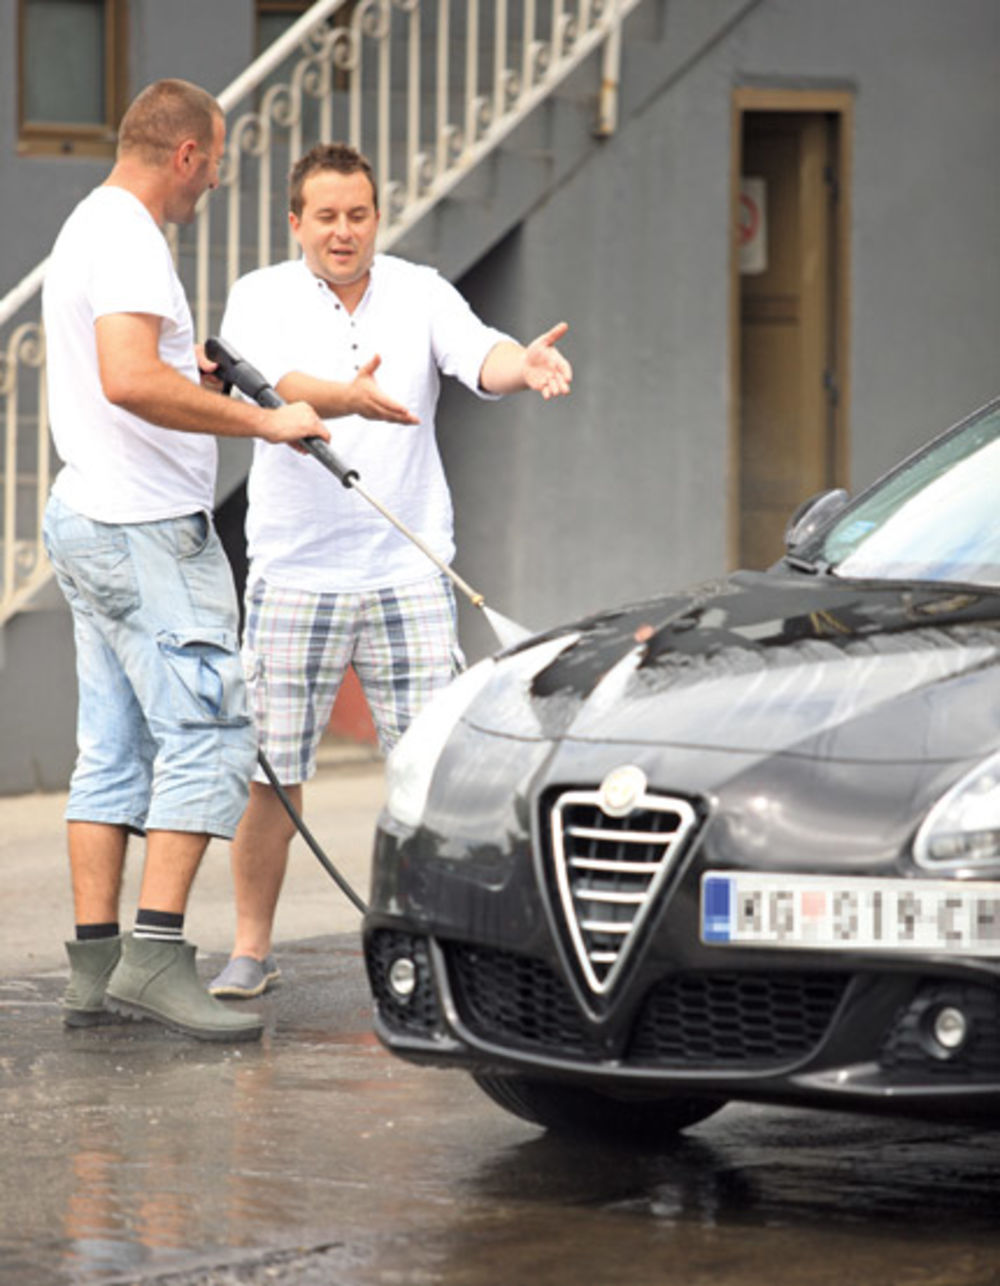 Voditelj Ivan Ivanović (35) izuzetno je dobar vozač i istinski zaljubljenik u automobile, a svoju ljubimicu Alfu Romeo Giuliettu, naprosto obožava i redovno održava.